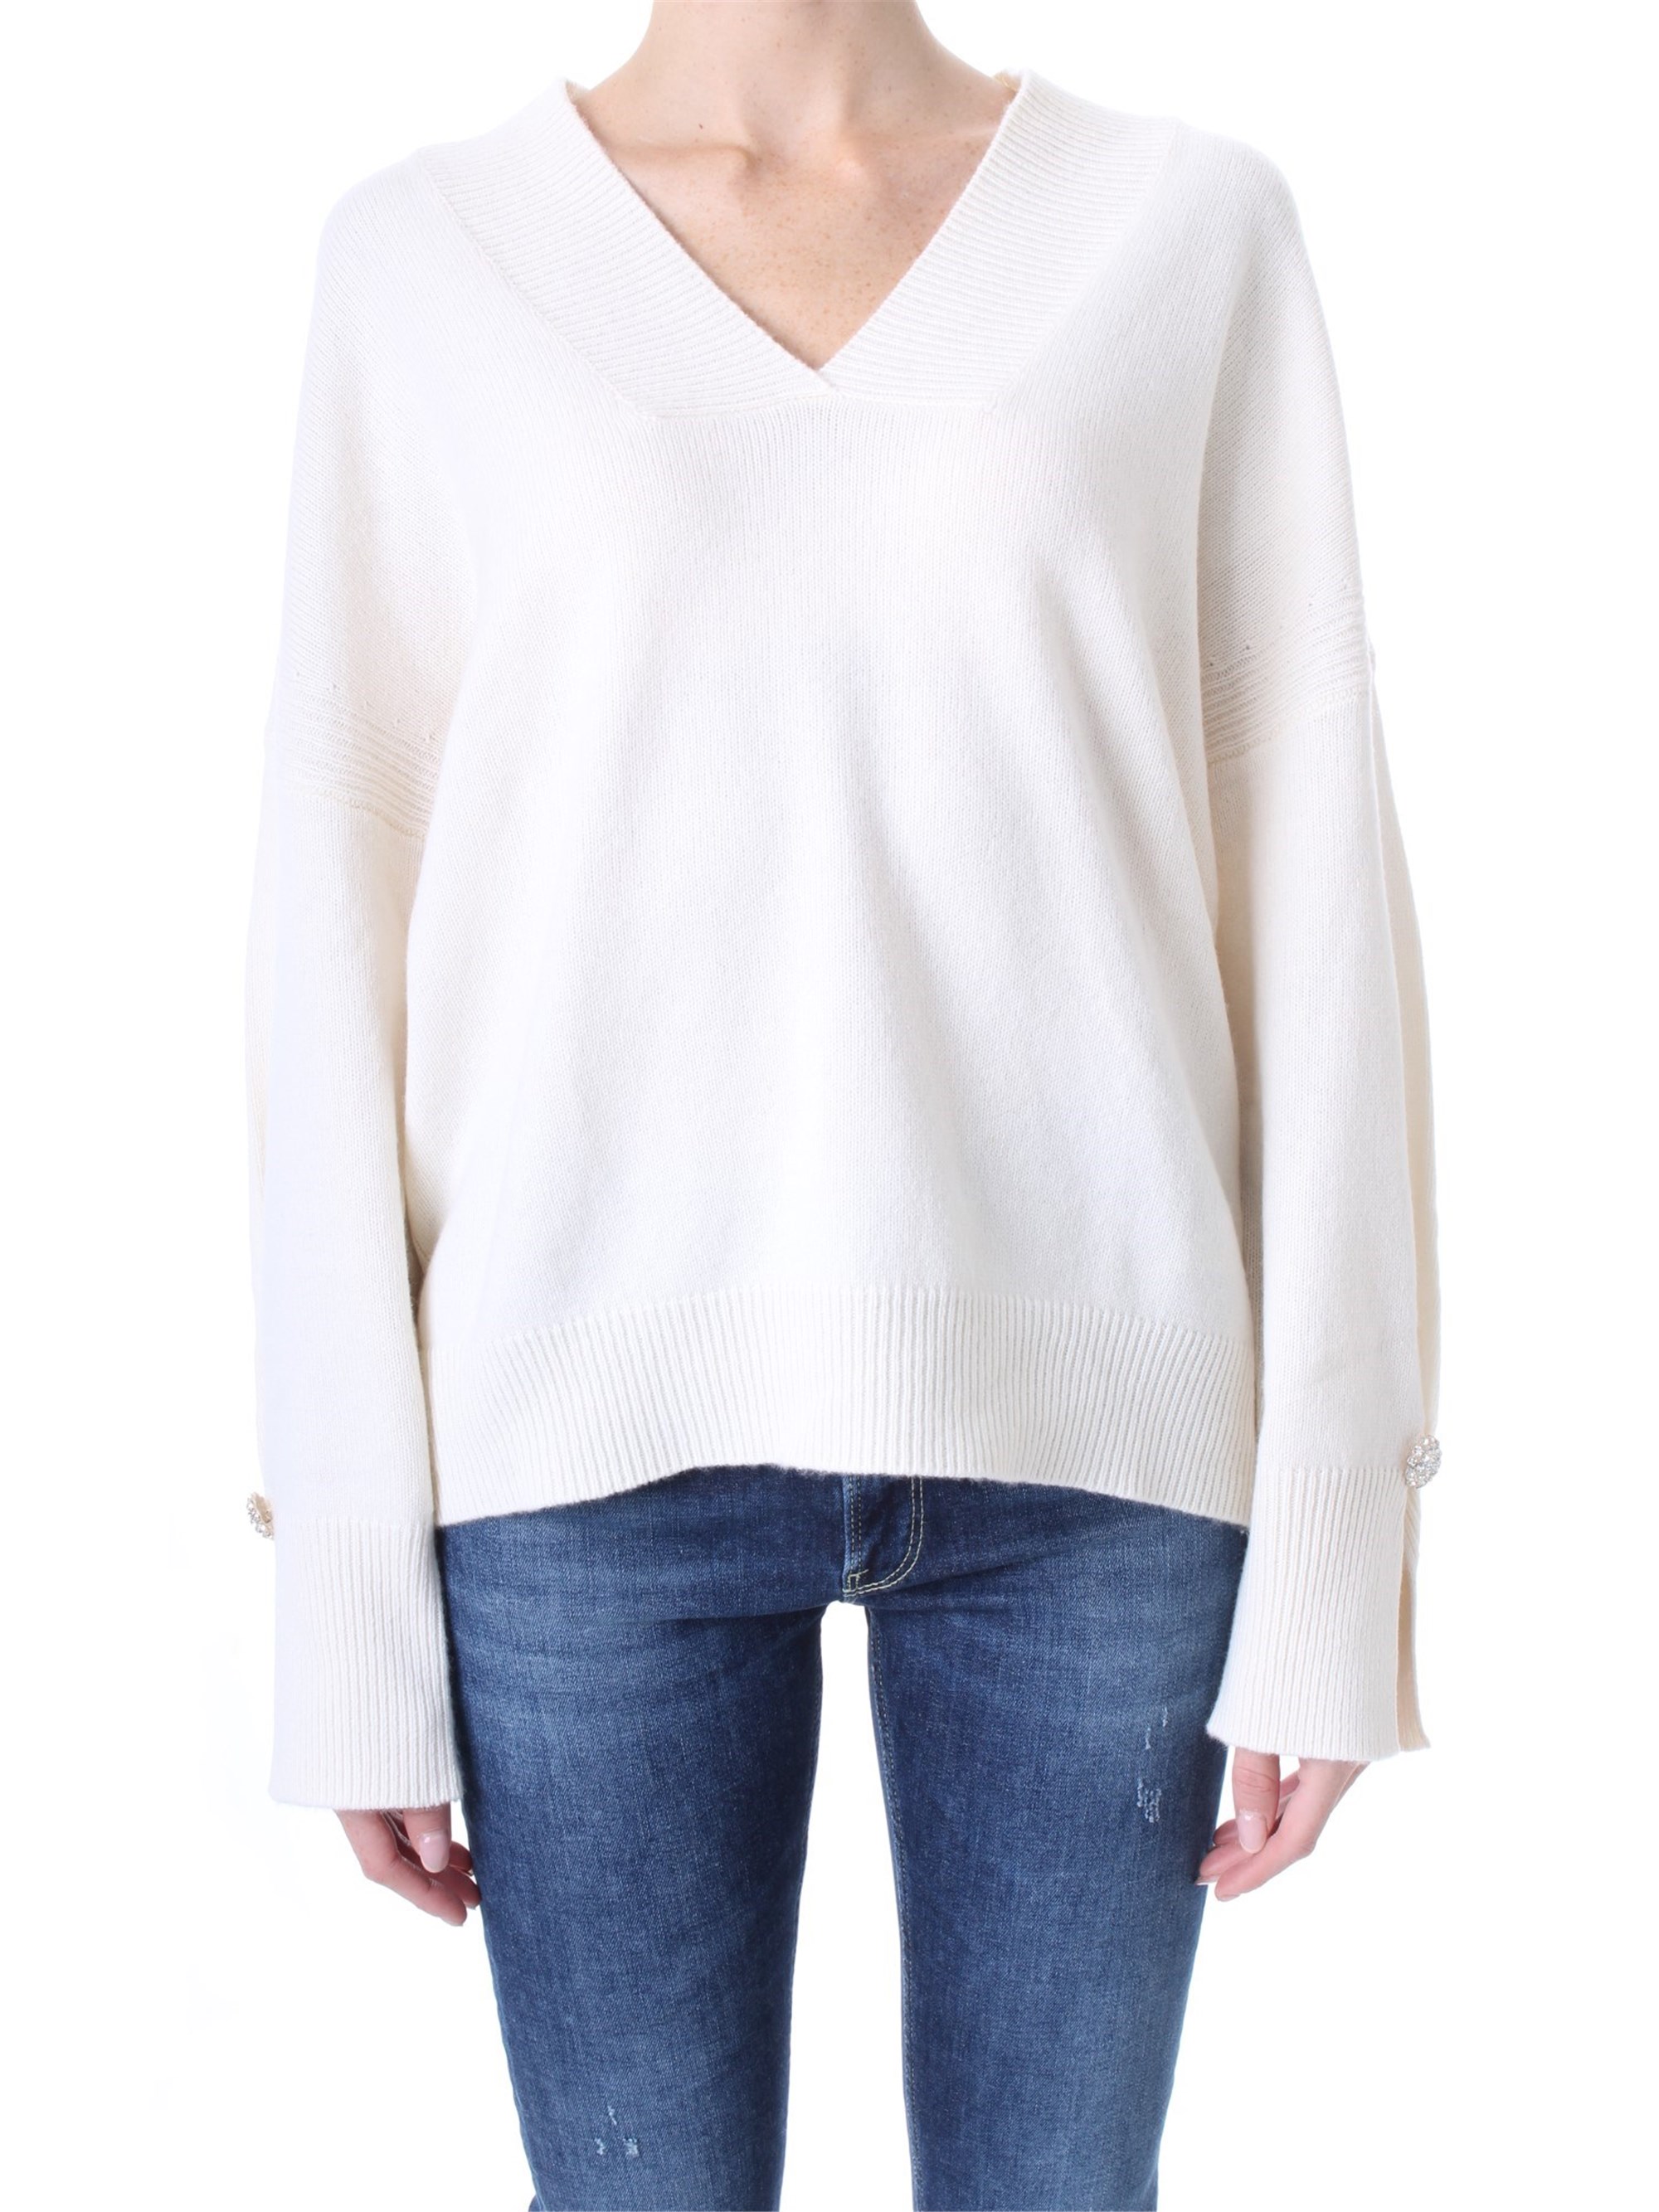 LIU JO Sweatshirt Damen weiß lana acrilico günstig online kaufen